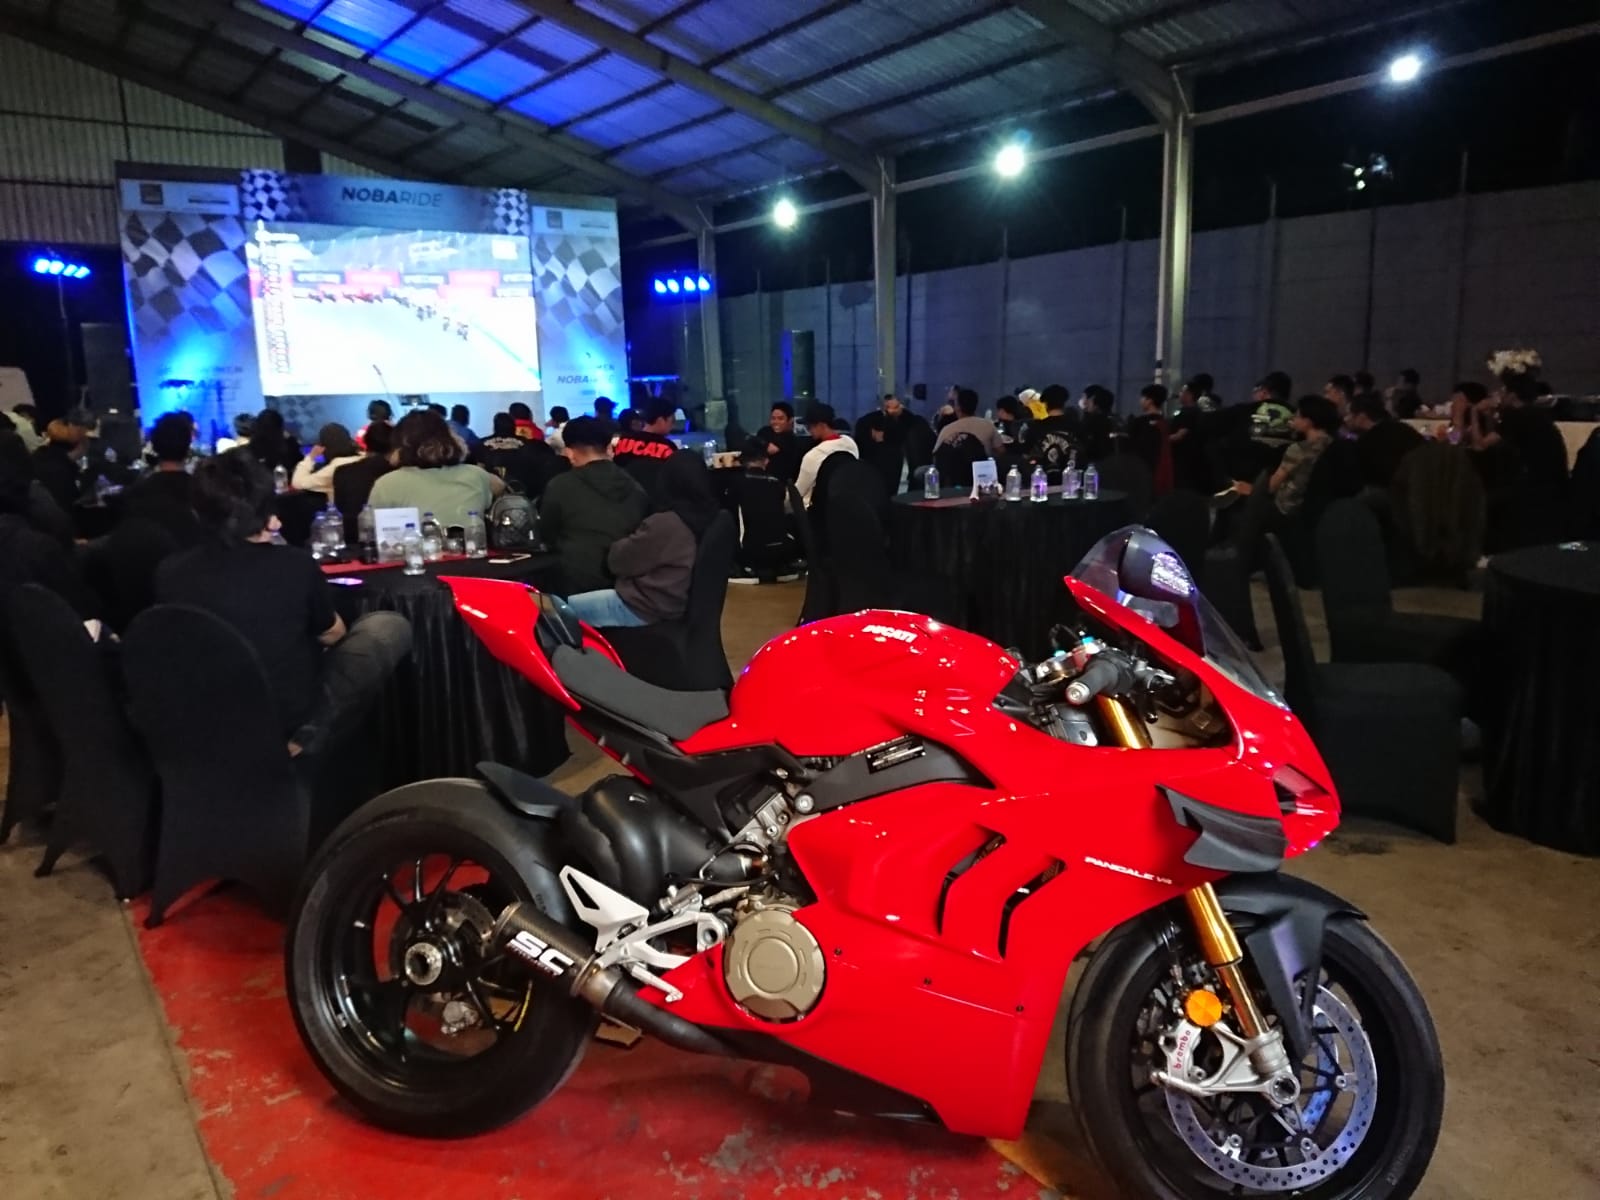 Ajak Komunitas Moge Nobaride MotoGP Serentak Enam Kota, Dukung Ducati Gresini Team